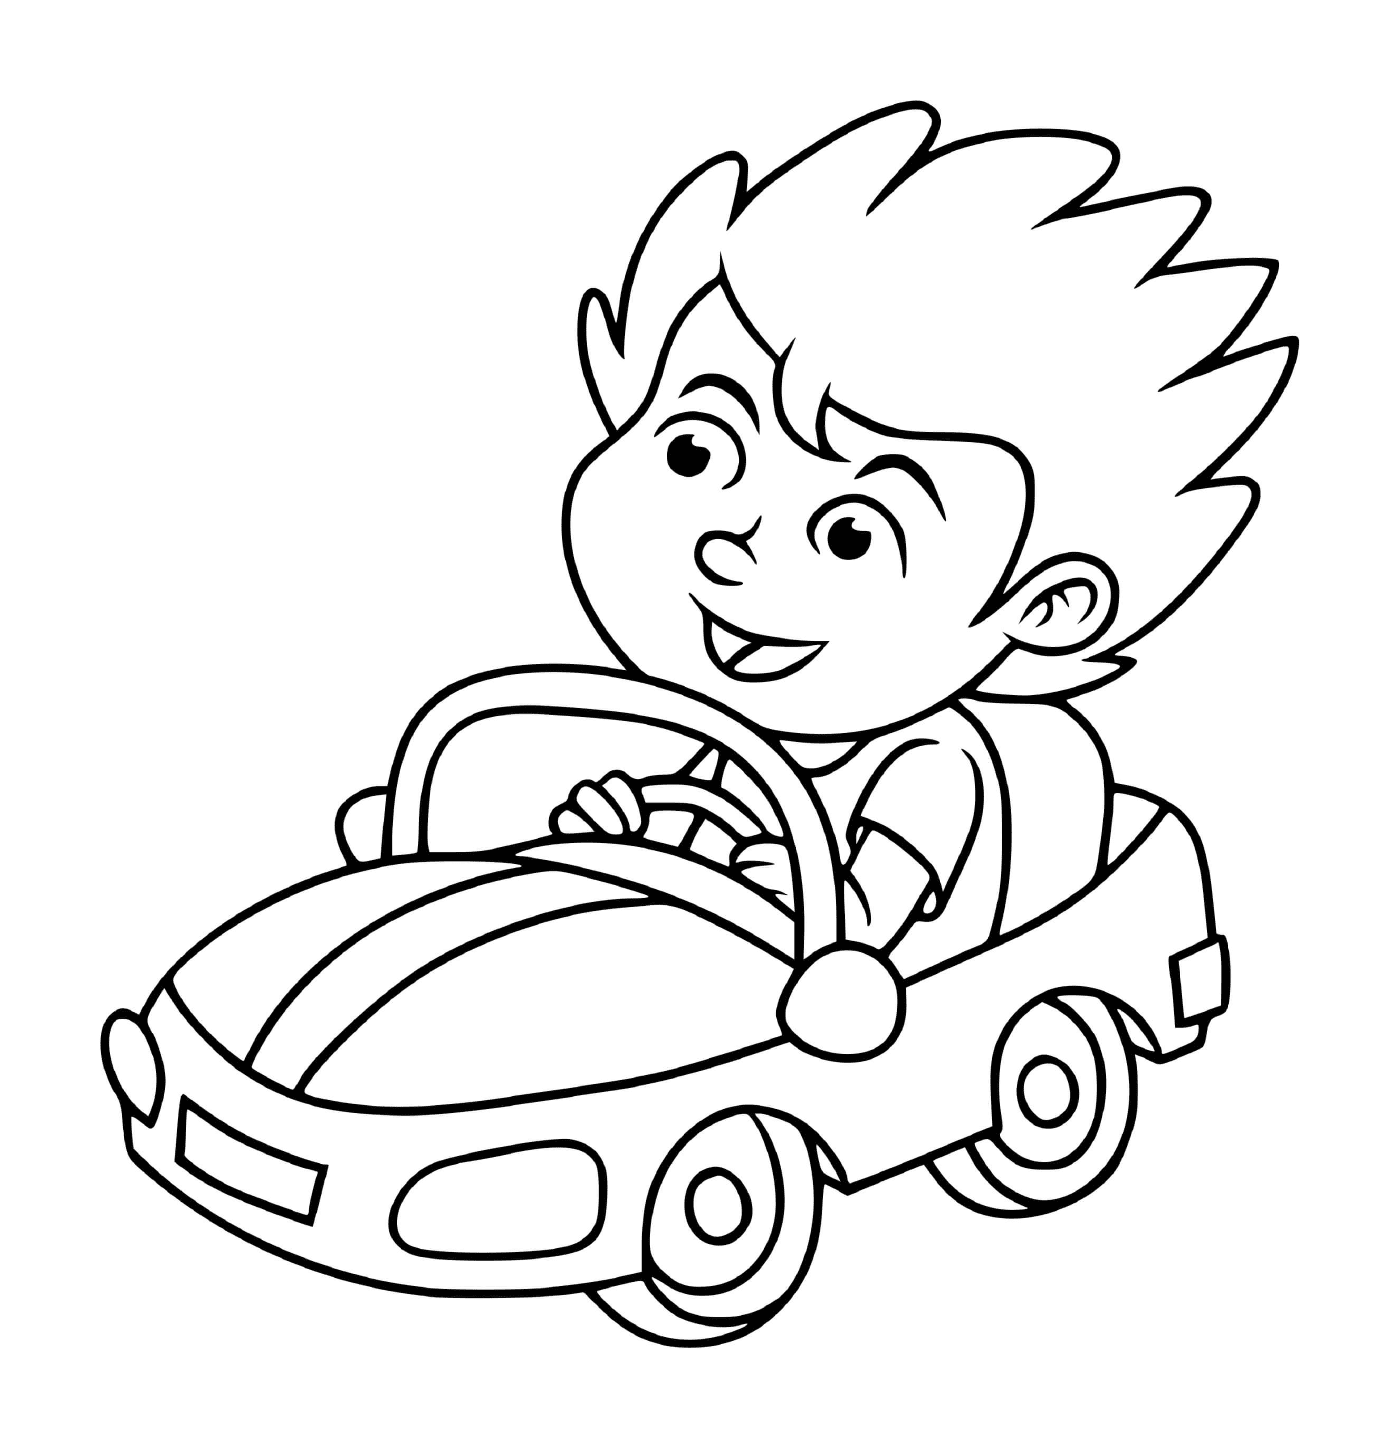  الطفل يقود سيارة مع تأمين 